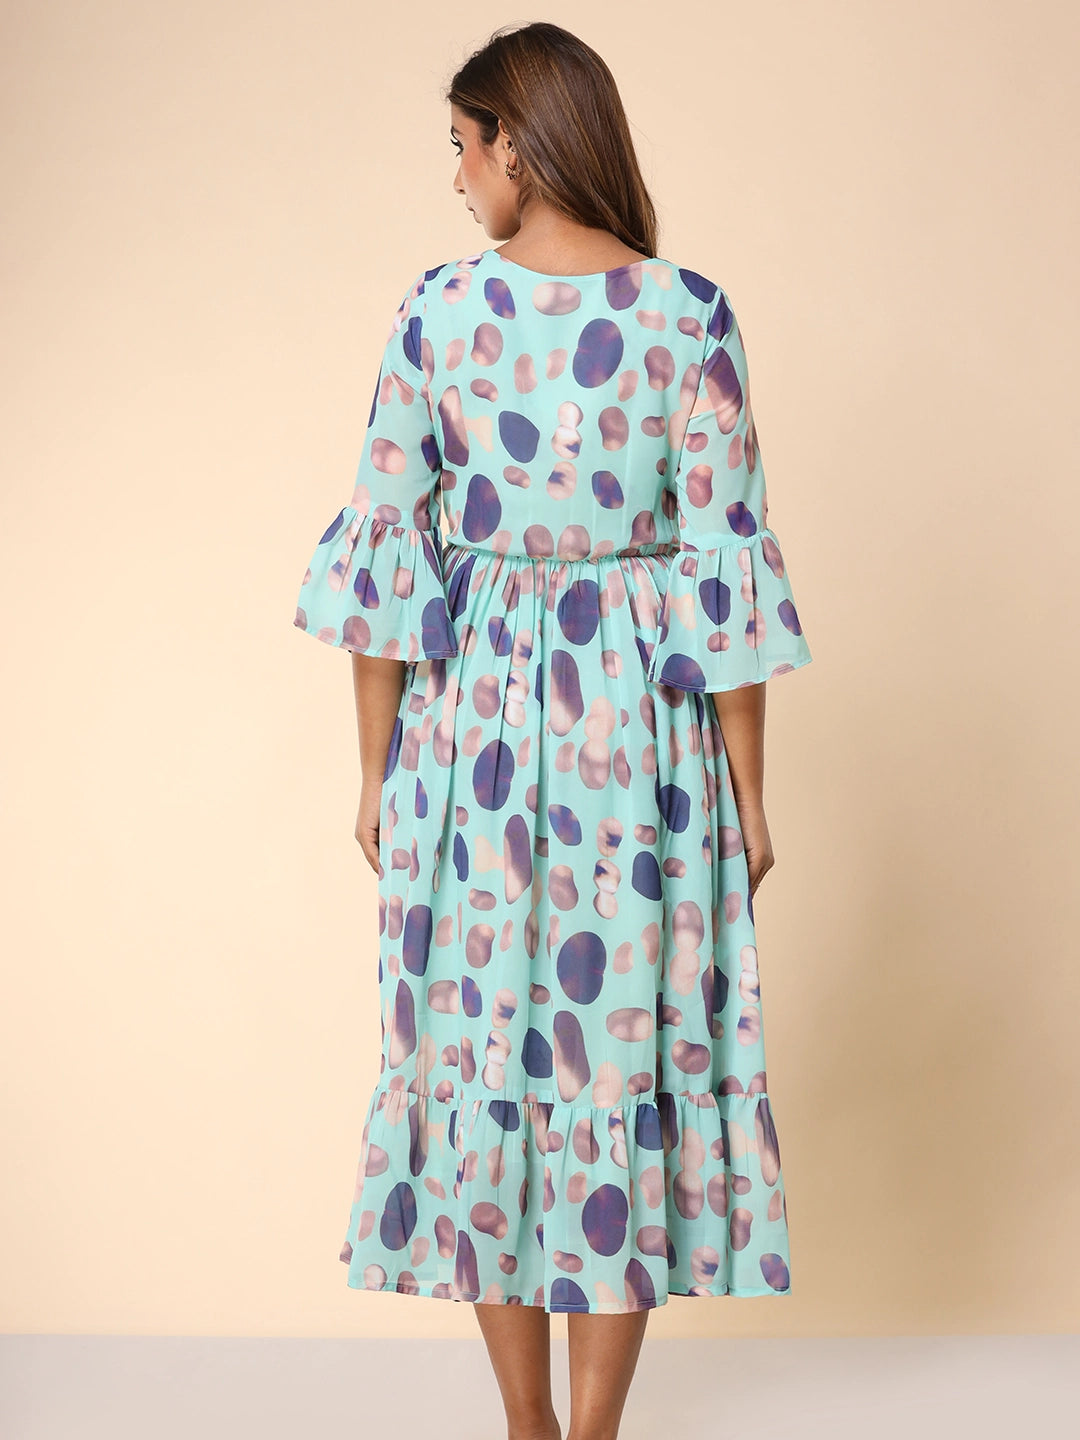 Stylish Printed Dress